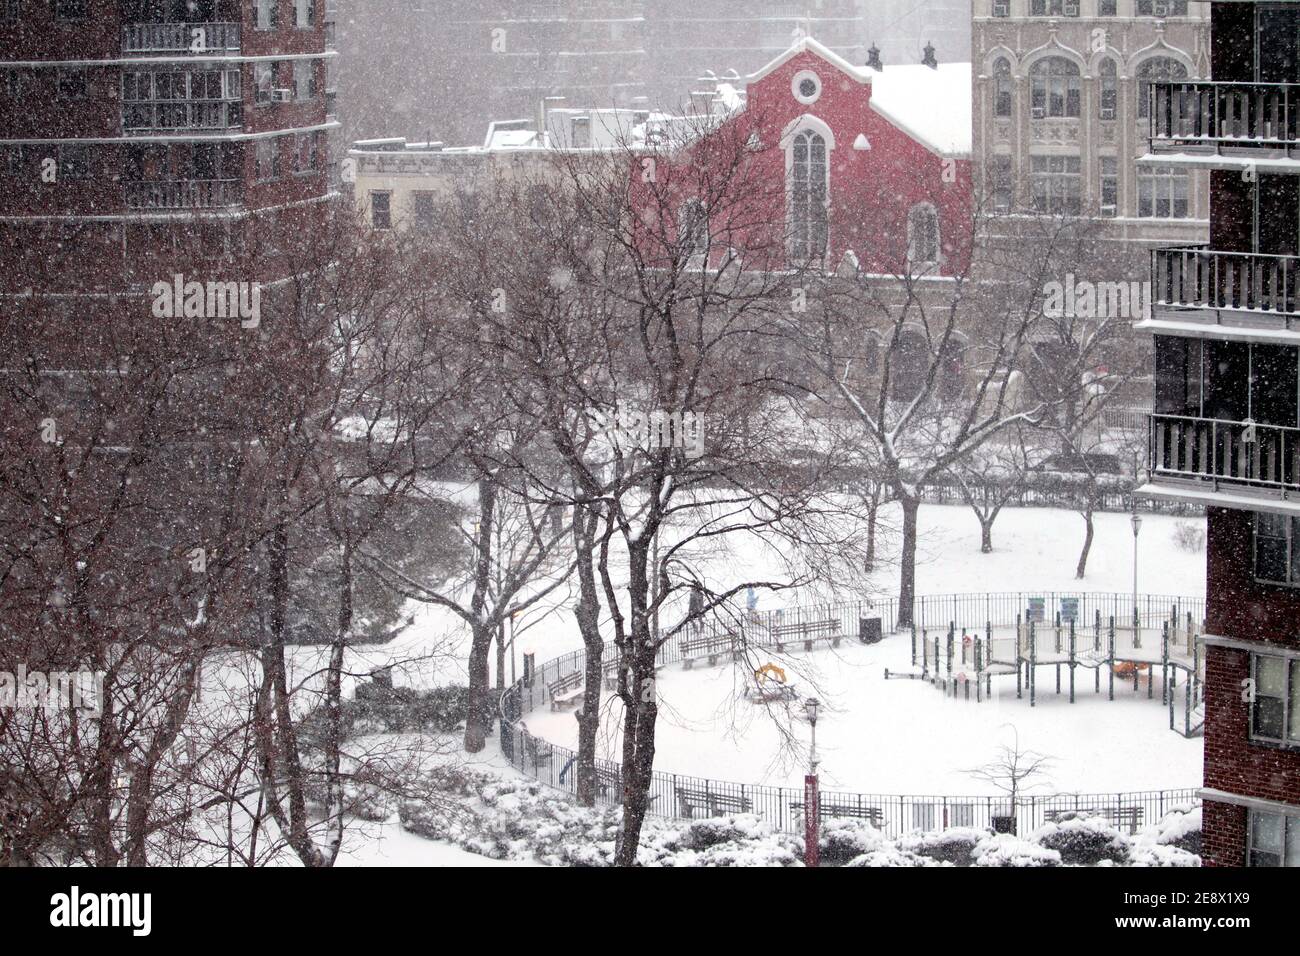 New York City, New York, Stati Uniti. 1 gennaio 2021. La neve cade in un piccolo parco nella sezione Chelsea di Manhattan come una grande tempesta di neve ha coperto l'area di New York City oggi. Si prevede che la città potrebbe ottenere fino a due piedi di neve prima che la tempesta si sottomette Credit: Adam Stoltman / Alamy Live News Foto Stock